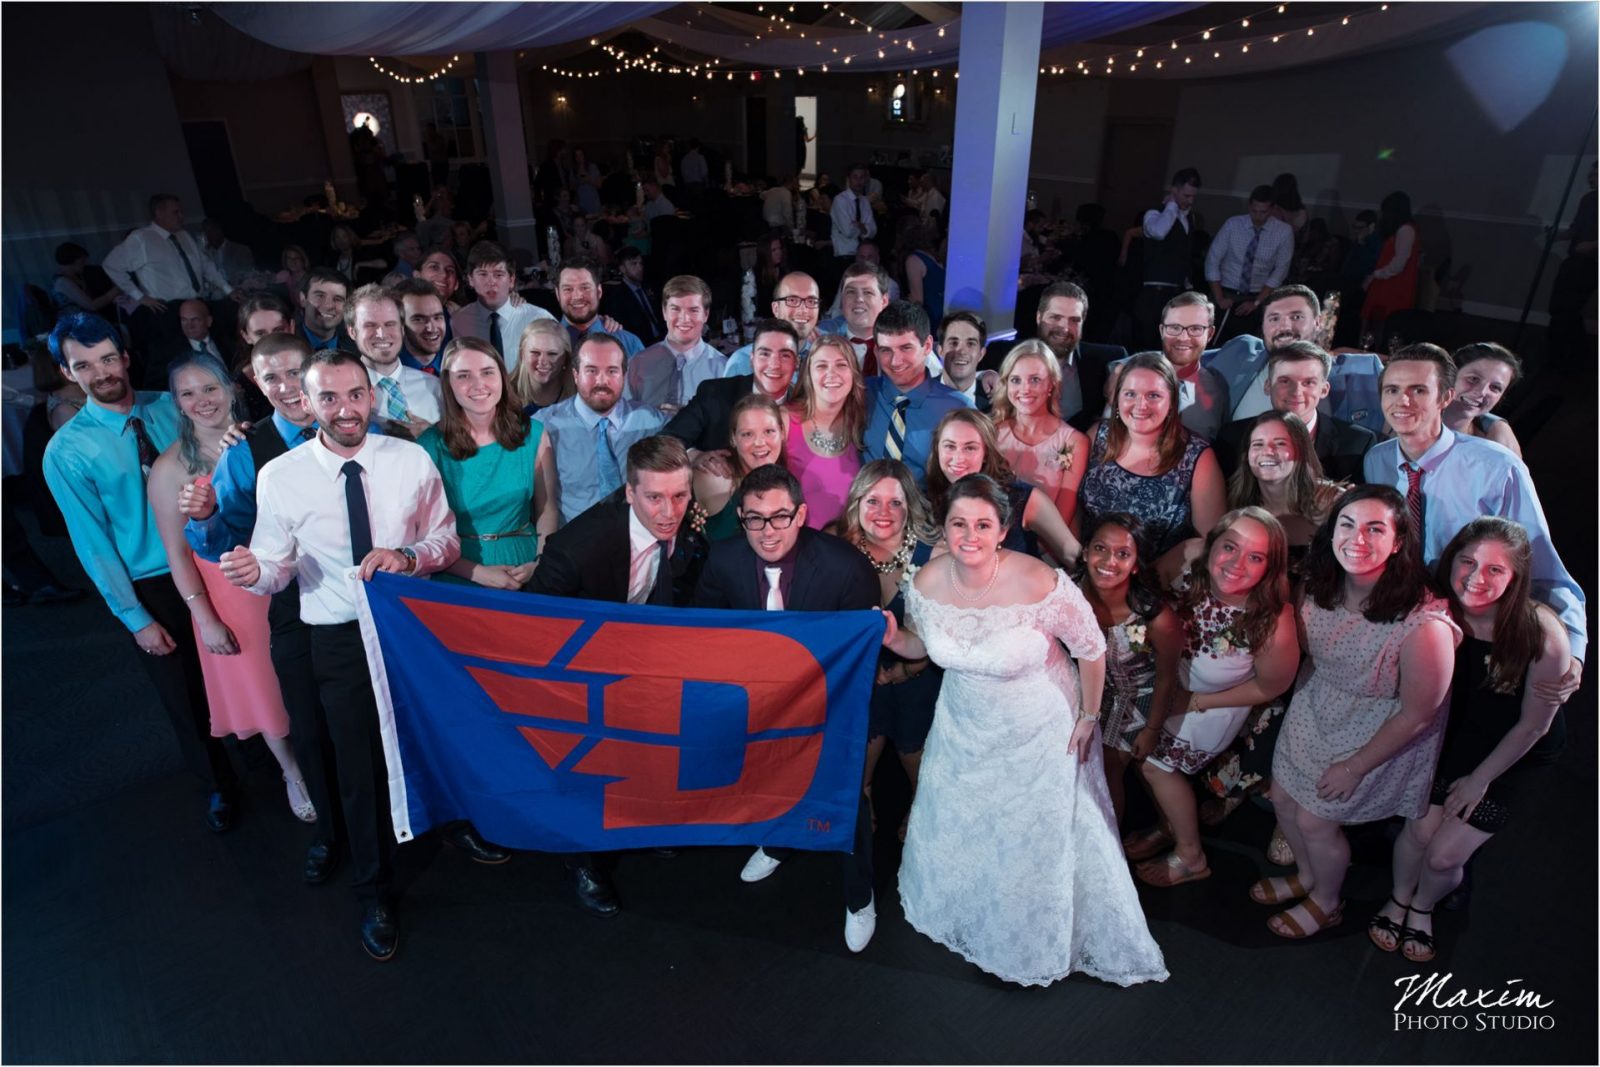 University of Dayton Madison Event Center Wedding Photography Reception